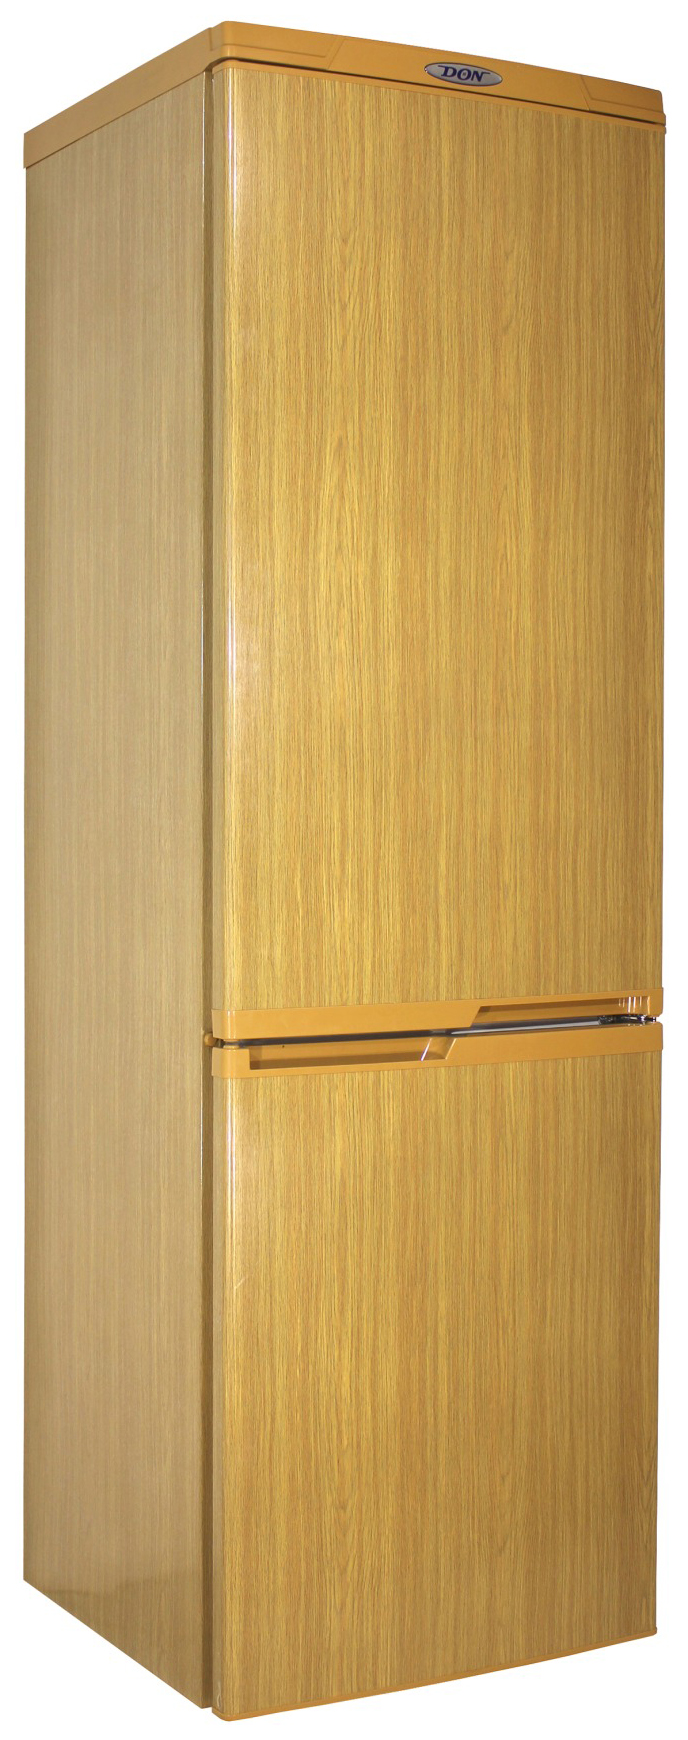 Холодильник DON R 291 DUB коричневый холодильник korting knfc 71928 gbr коричневый